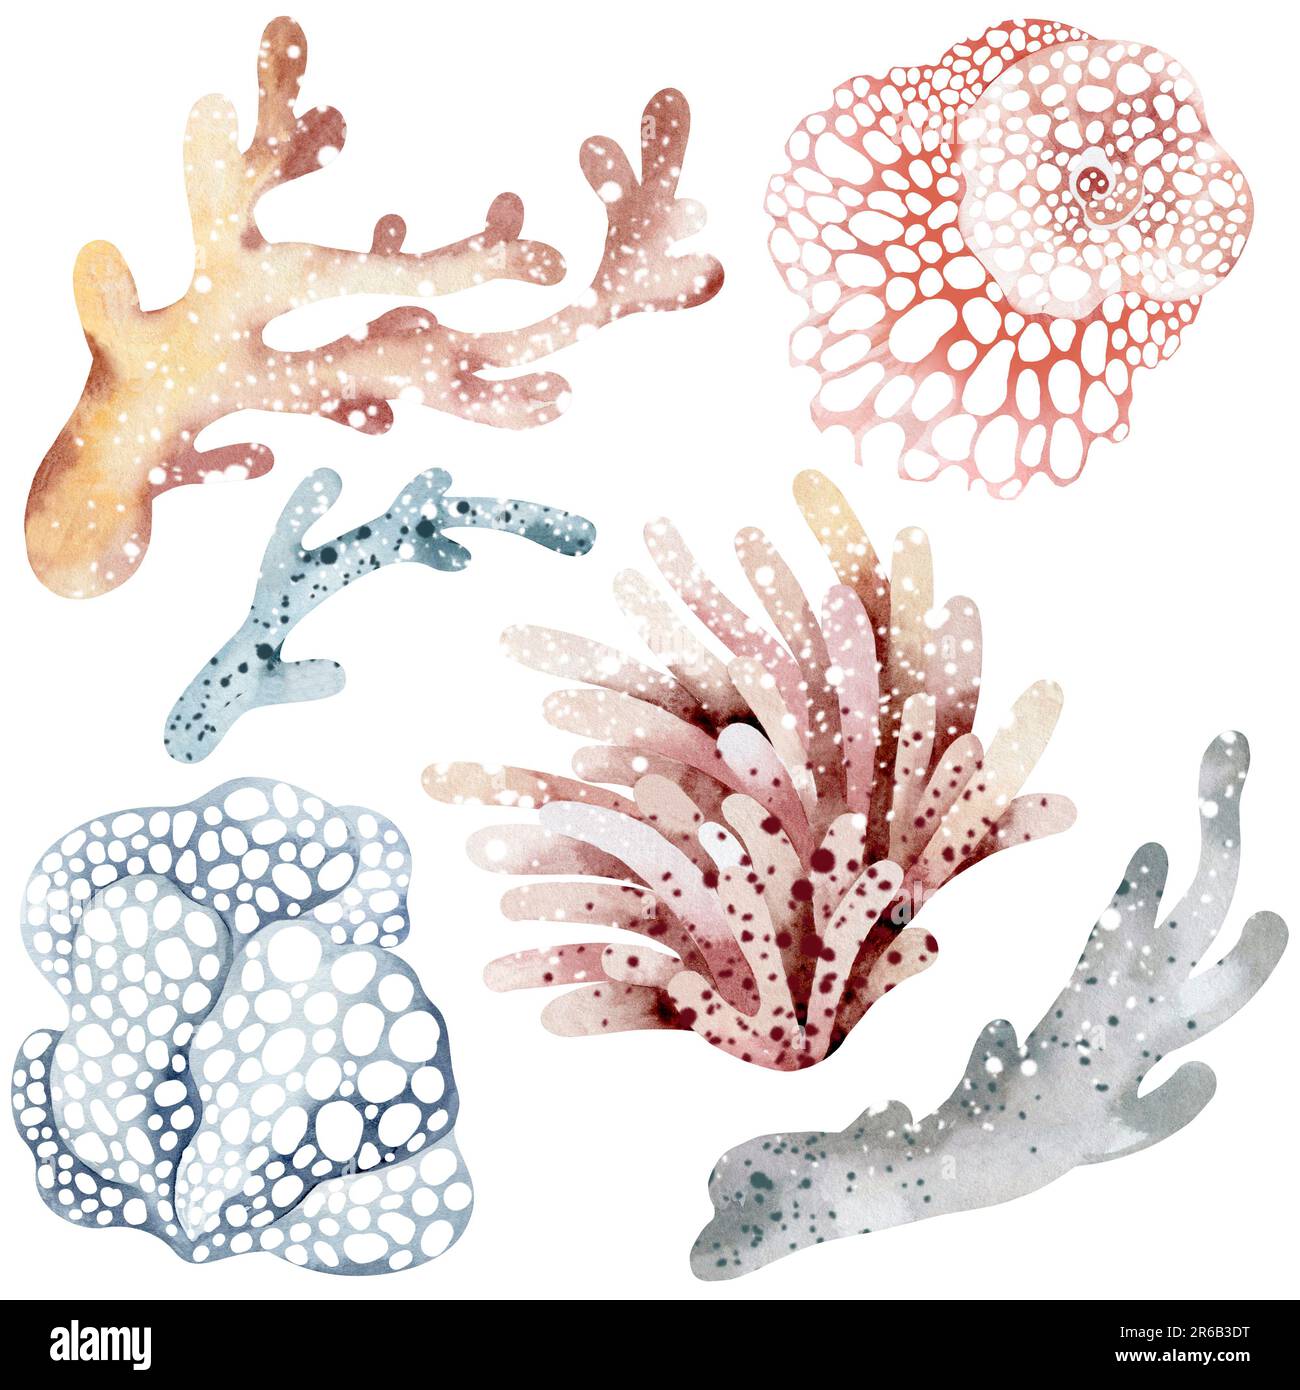 Aquarell-Darstellung von Unterwasserkorallen. Meeres-Unterwasserpflanzen. Abbildung isoliert auf weißem Hintergrund. Postkarte, Aufkleber Stockfoto